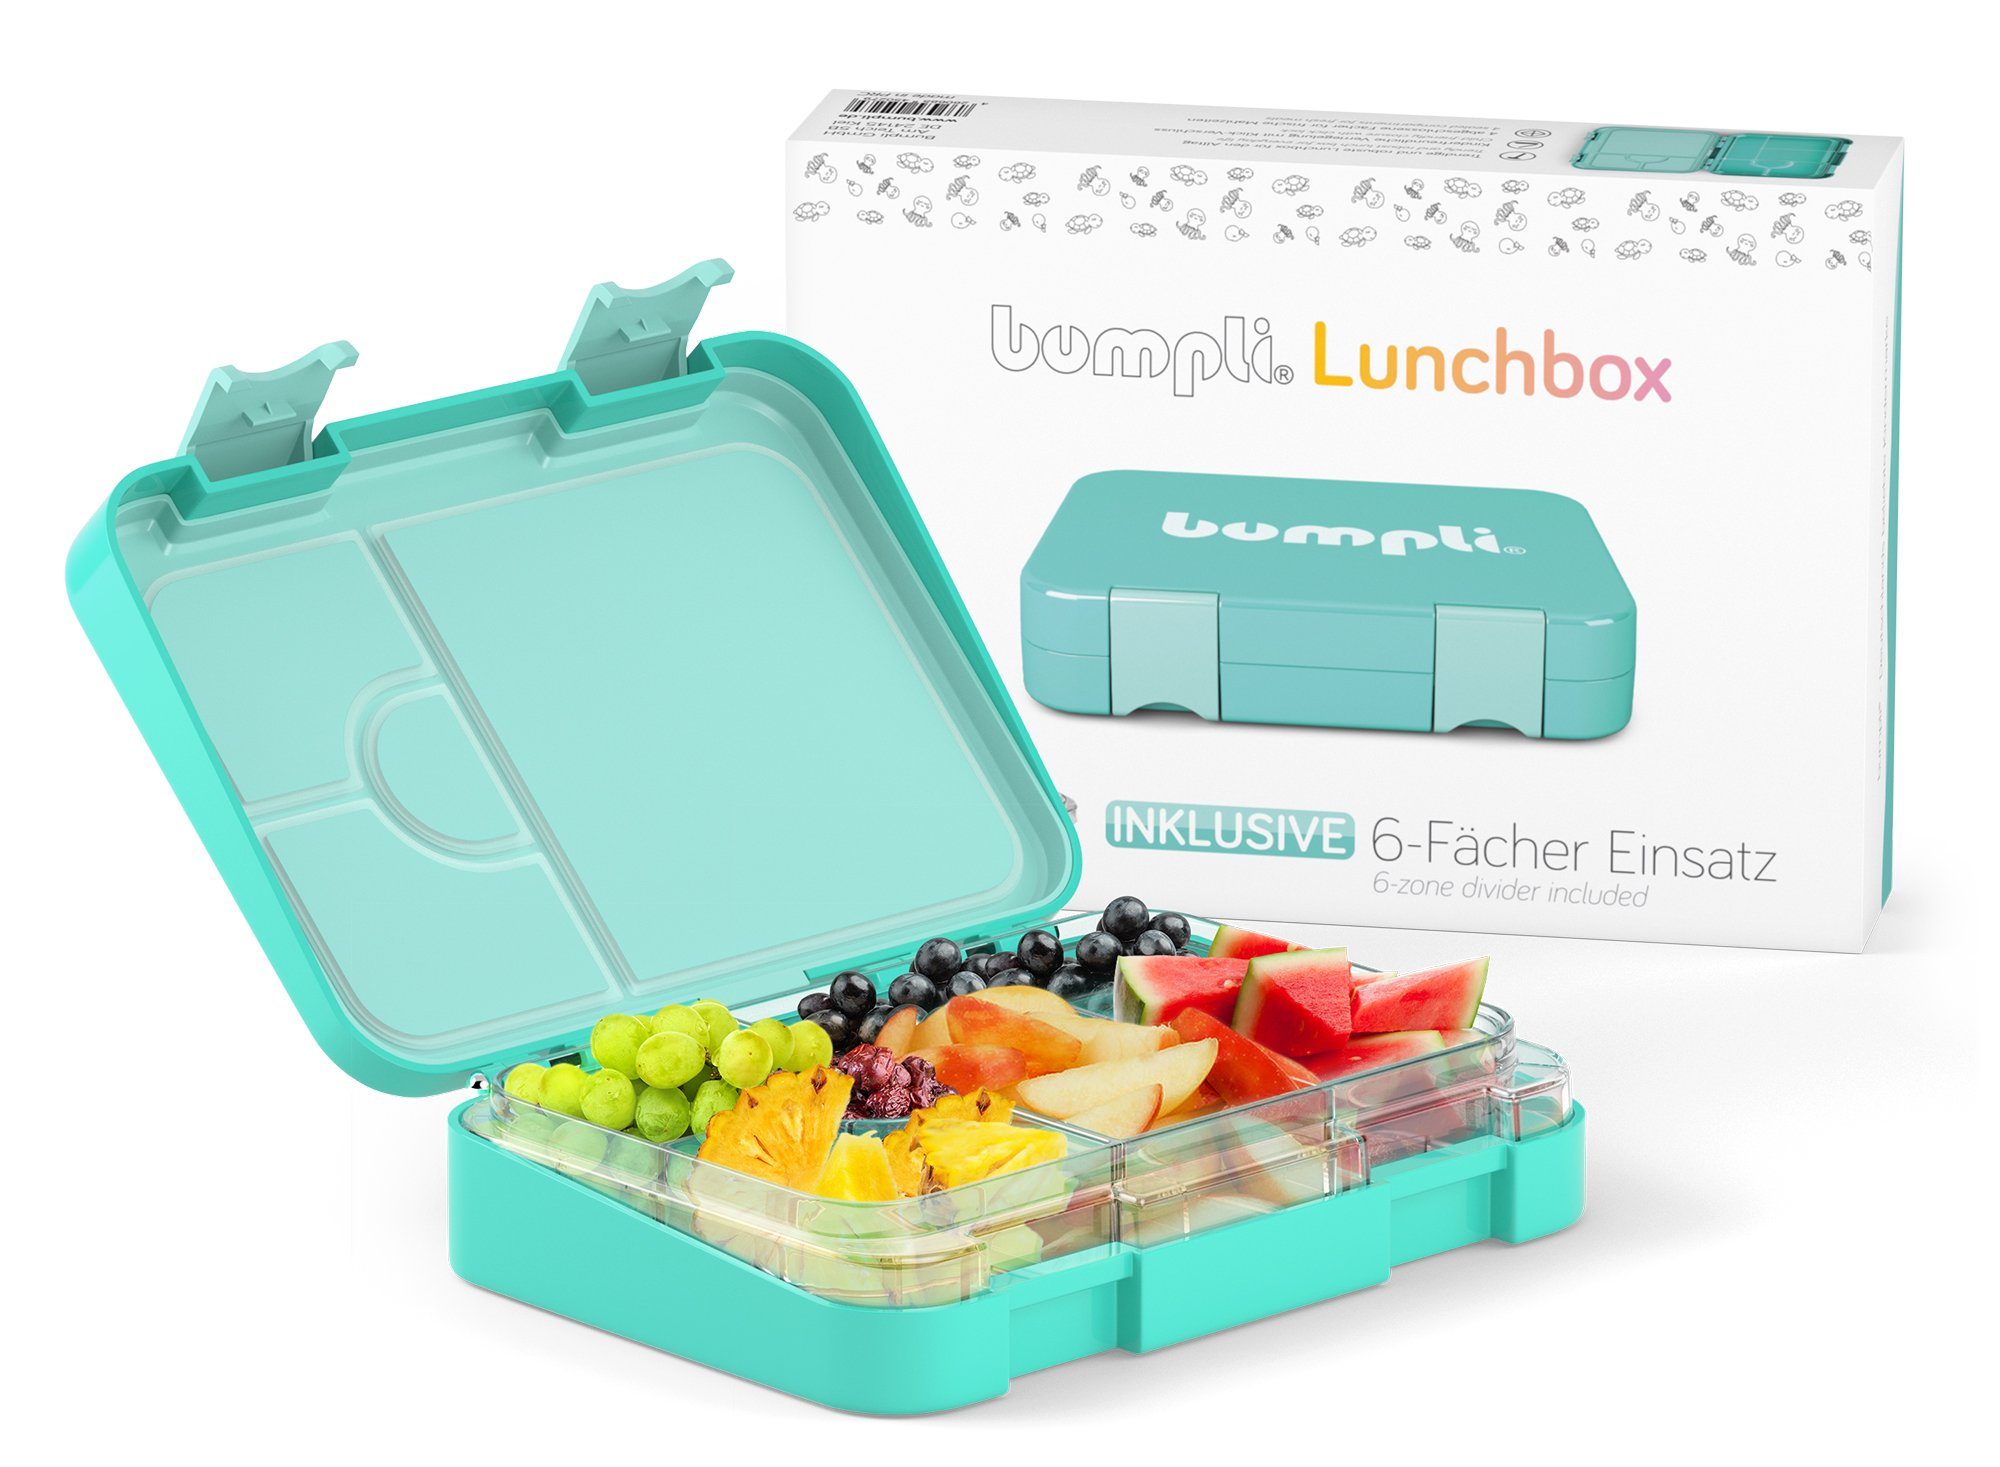 Brotdose Verriegelung Kinderfreundliche Vesperdose, Kinder Fächer) Lunchbox bumpli® Tritan, BPA-frei- (6 Auslaufsicher & Brotbüchse, mint